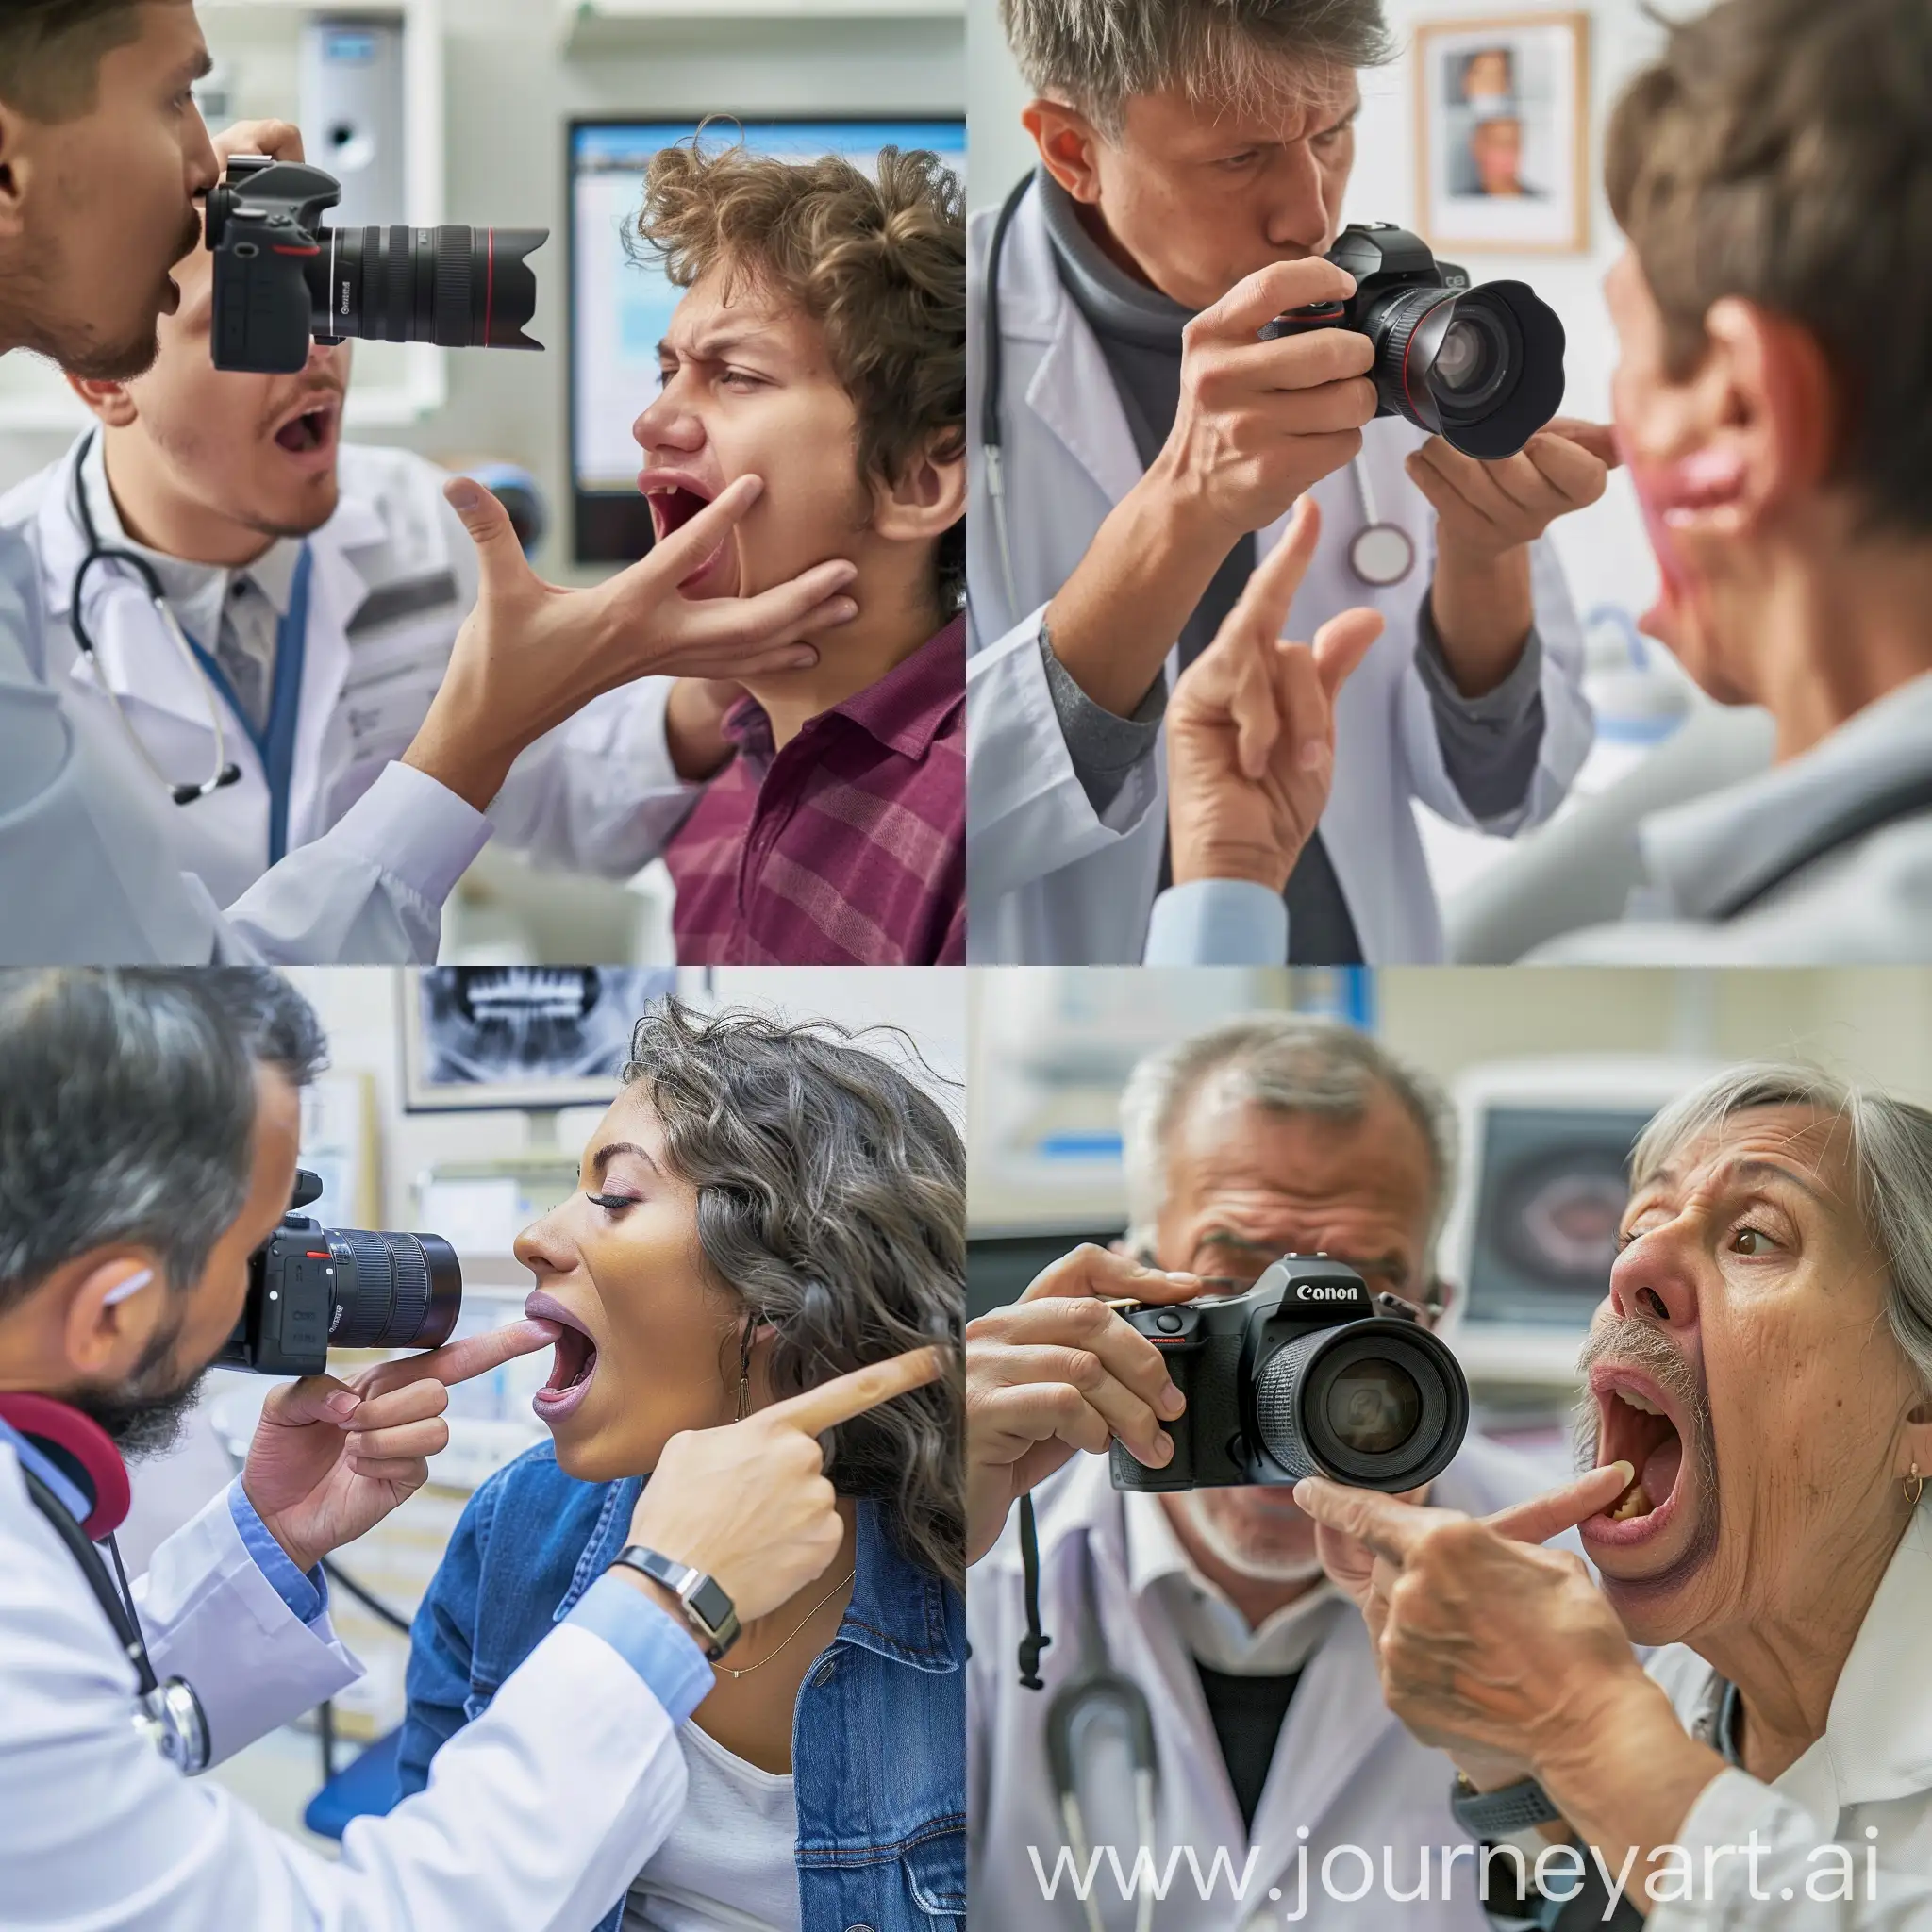 画面中有一名耳鼻喉科医生和一个患者，在治疗室，医生手拿相机，正在拍摄一个患者的喉咙，患者手指着自己的喉部，嘴巴张开成o形